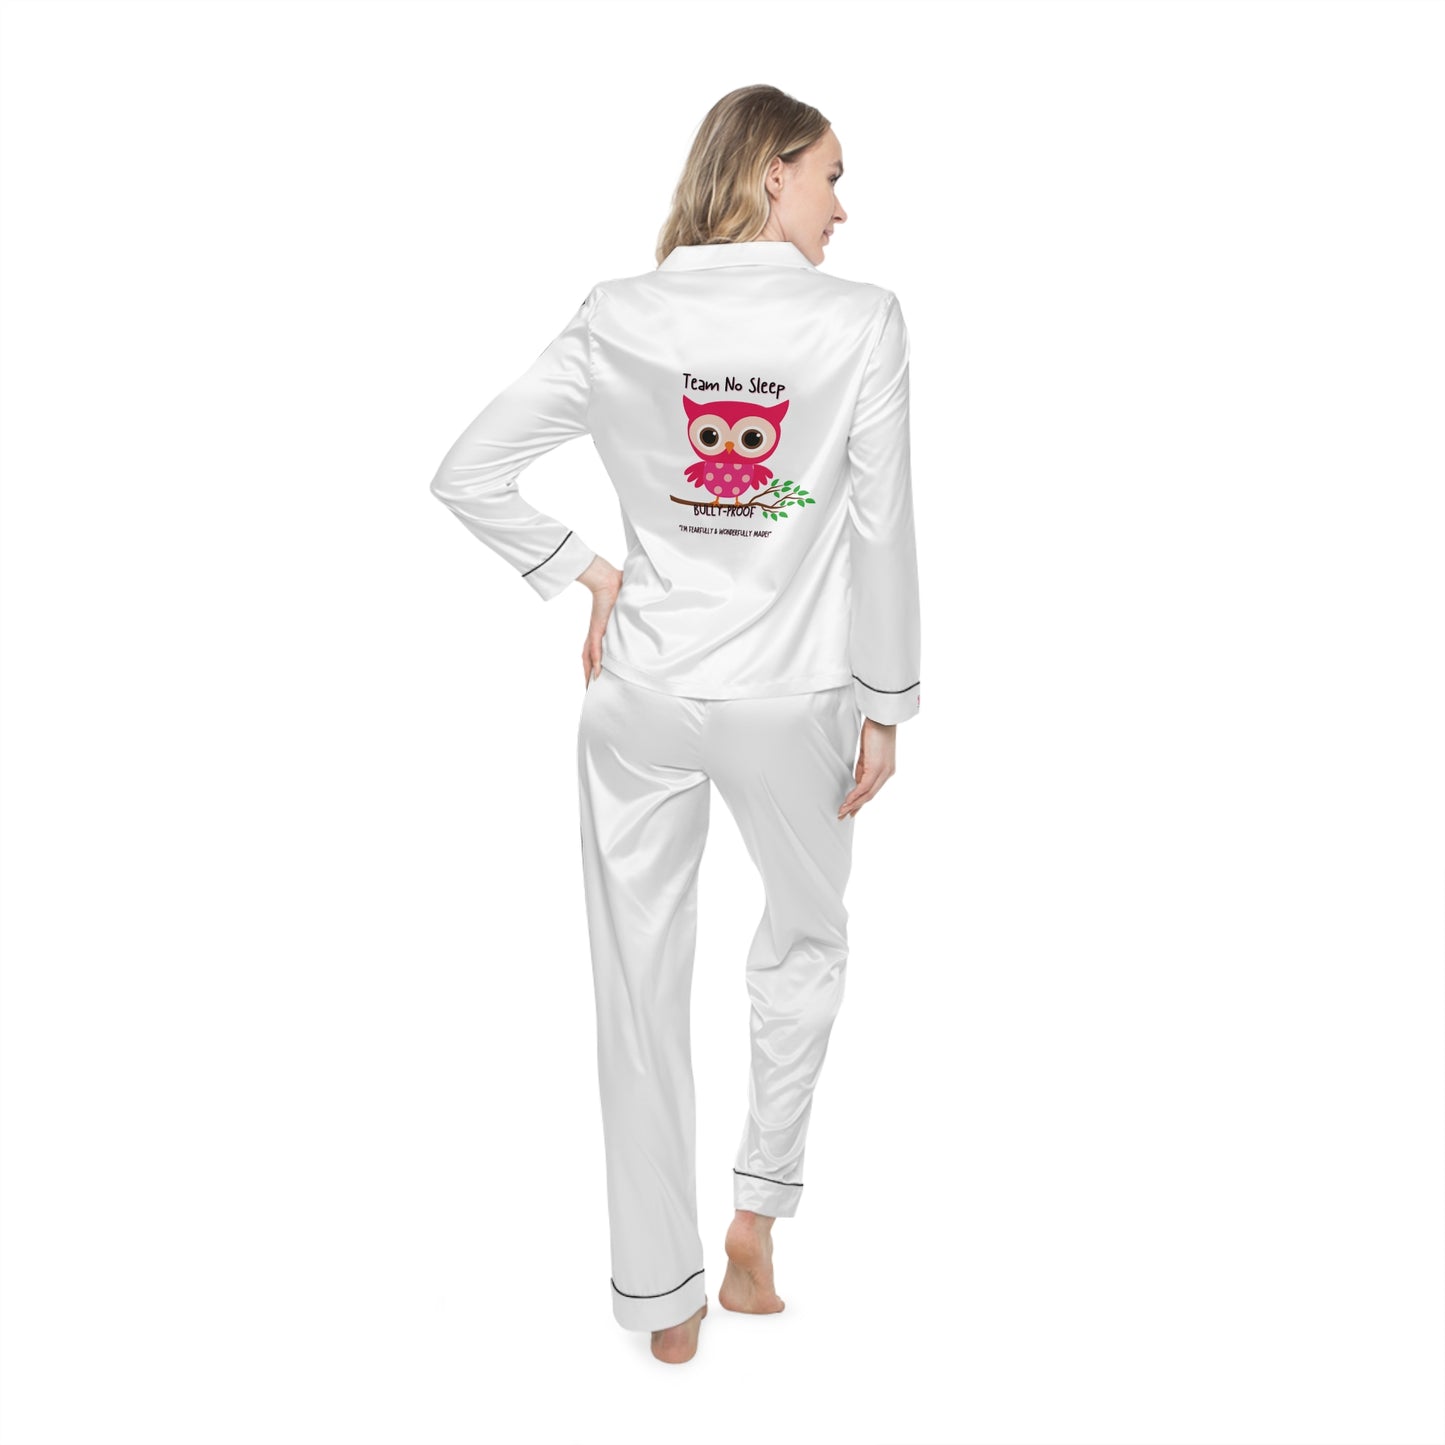 Bully-Proof Team No Sleep Women's Satin Pajamas (AOP)